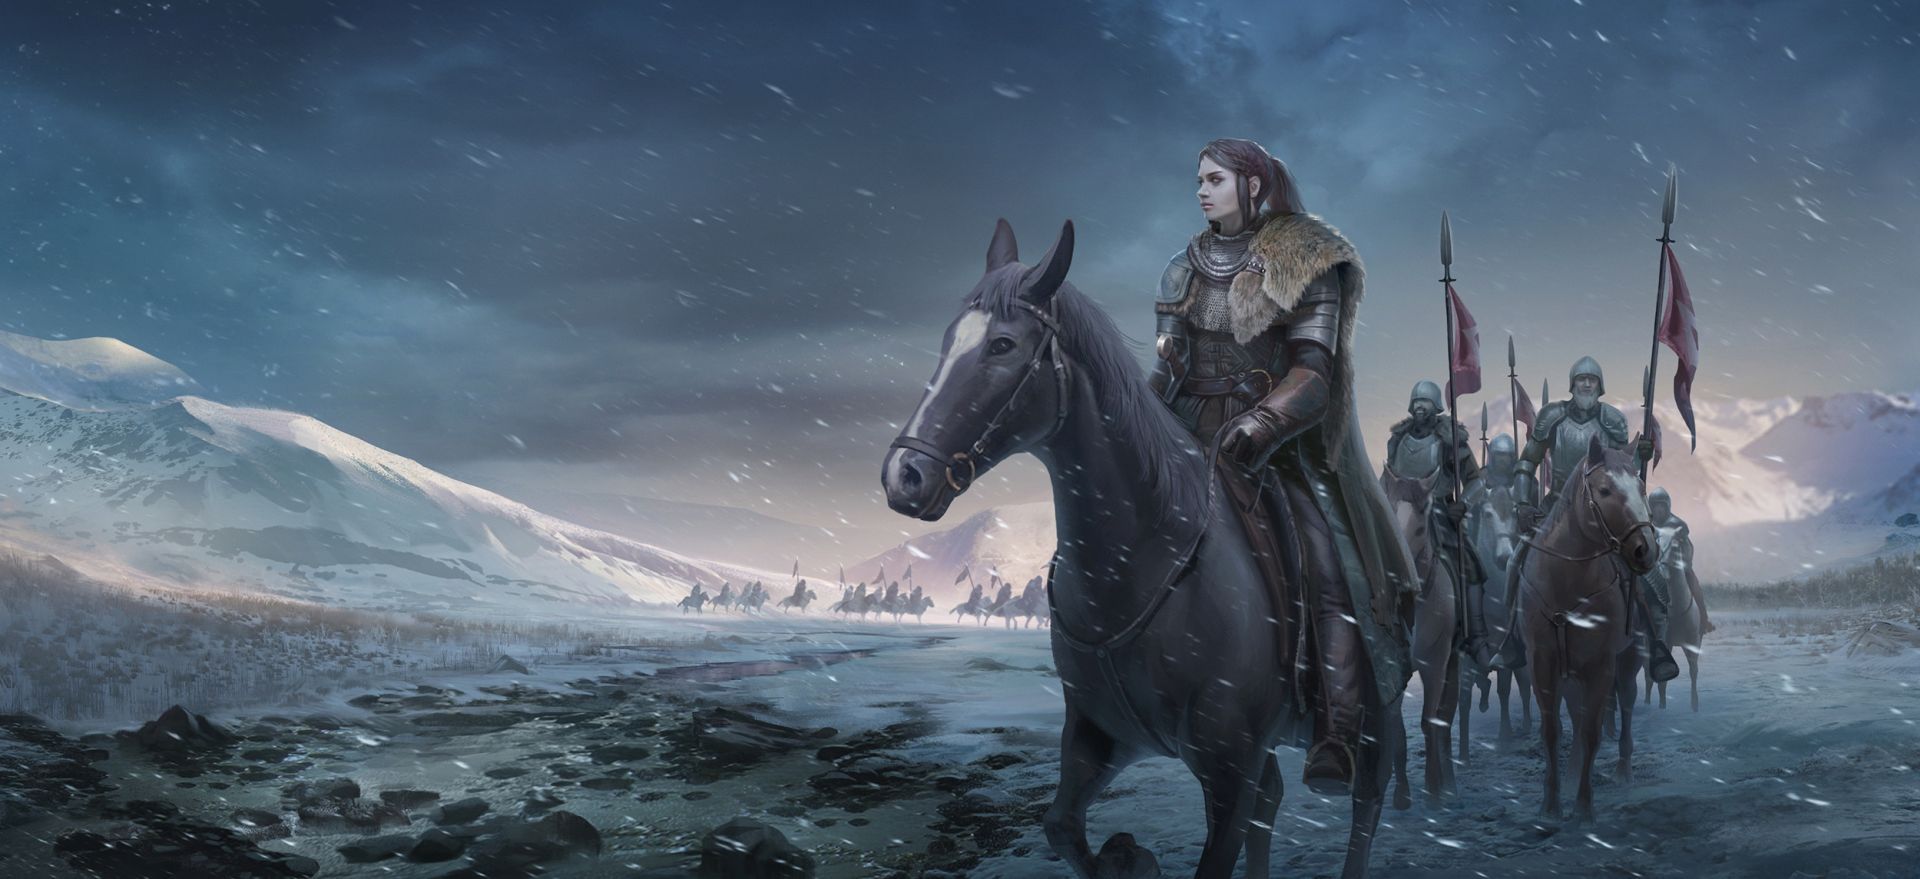 Game of Thrones winter art